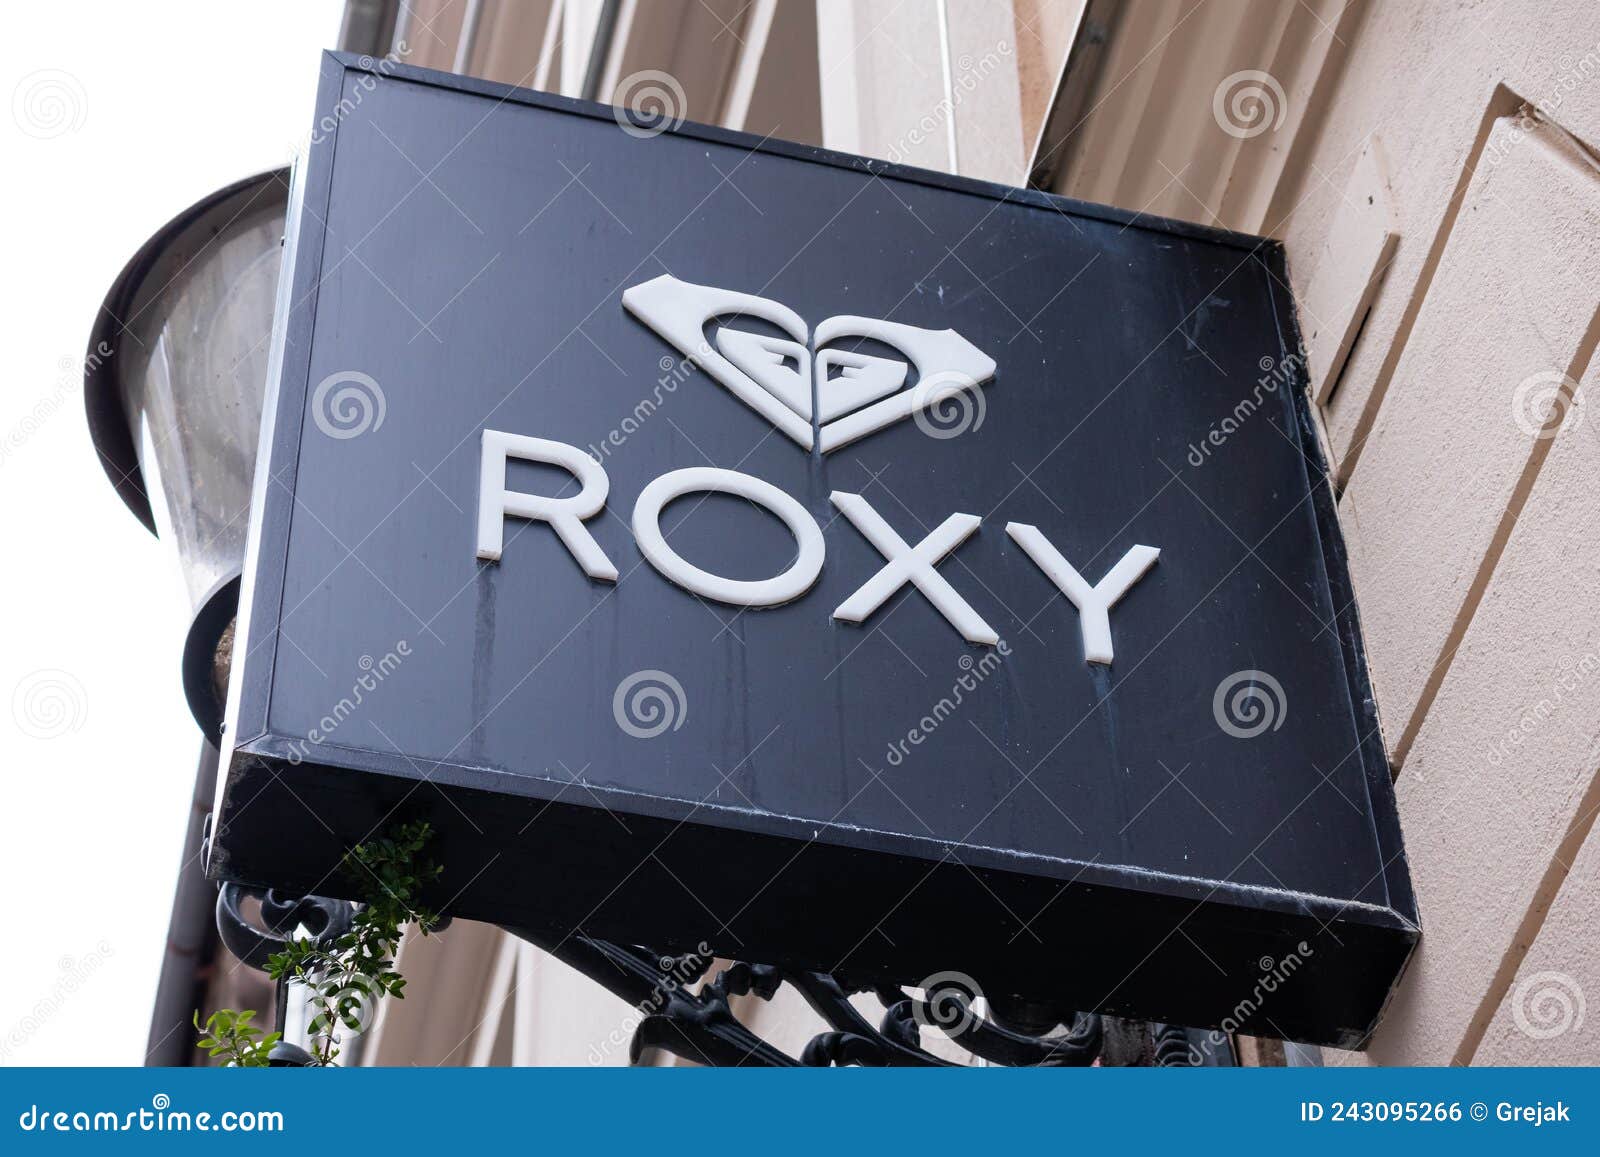 Roxy Slippy Printed Sandals Women's 9 US Black White Slides Roxy Logo New -  Body Logic